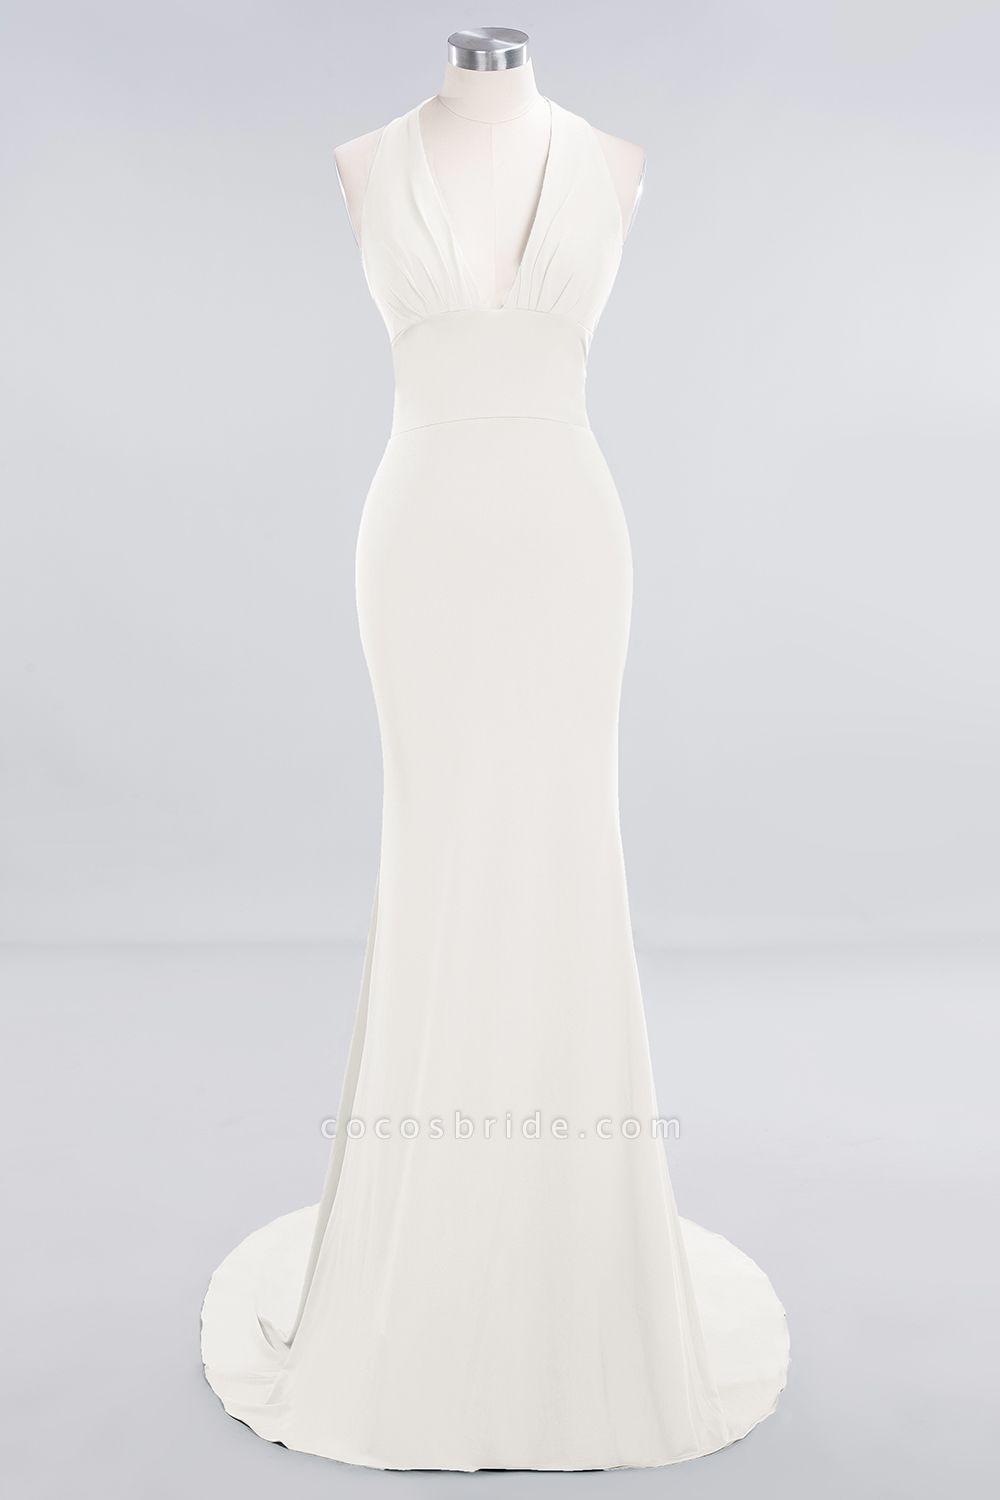 Elegant Halter Deep V-neck Open Back Floor-length Mermaid Prom Dress